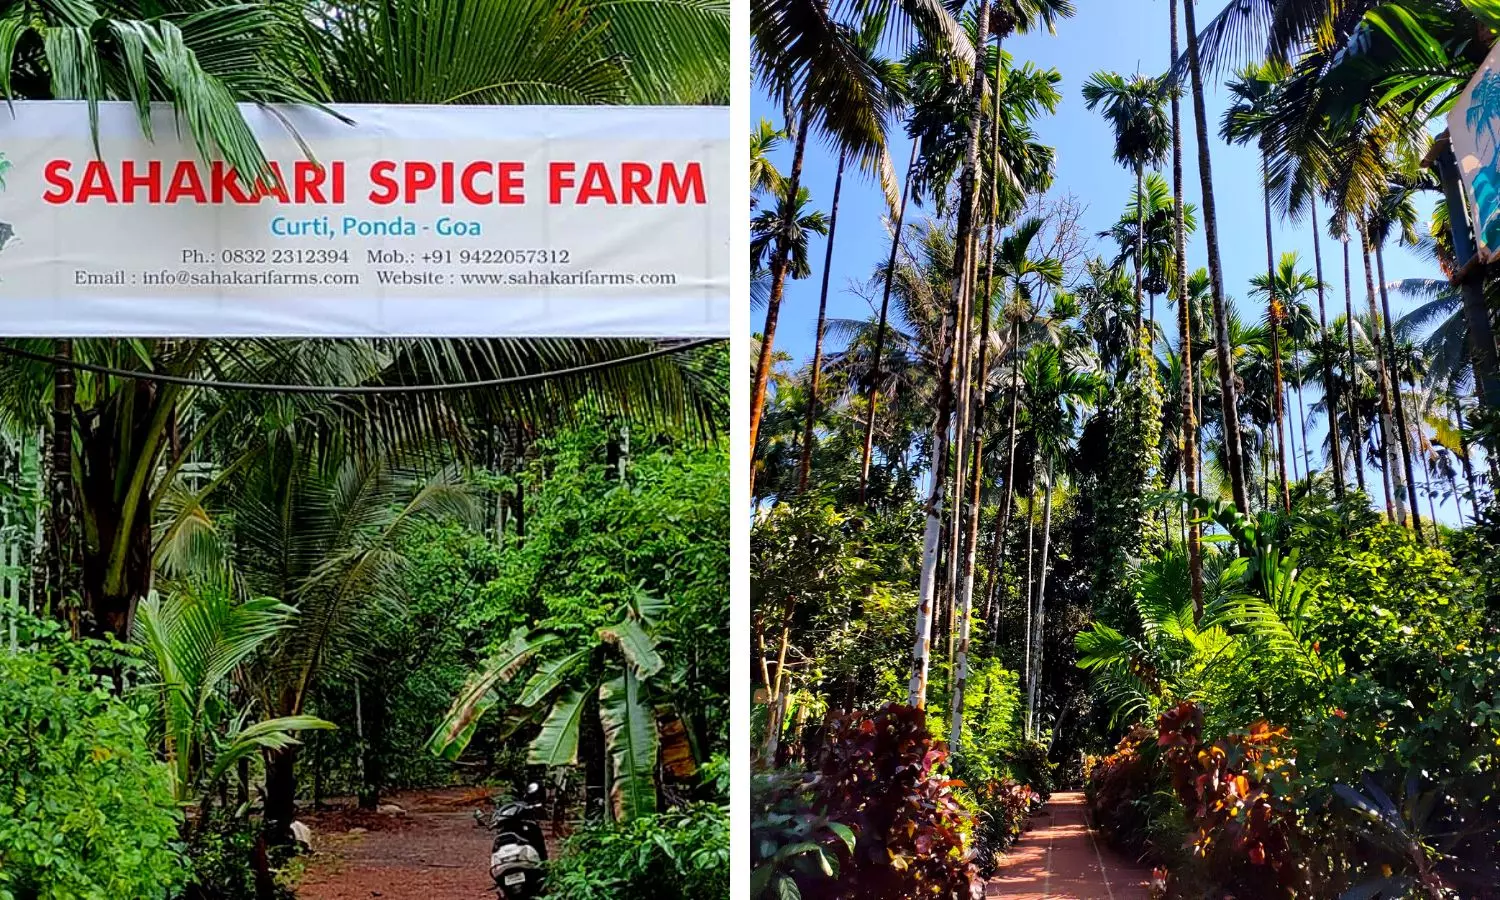 Sahakari Spice Farm in Ponda, Goa